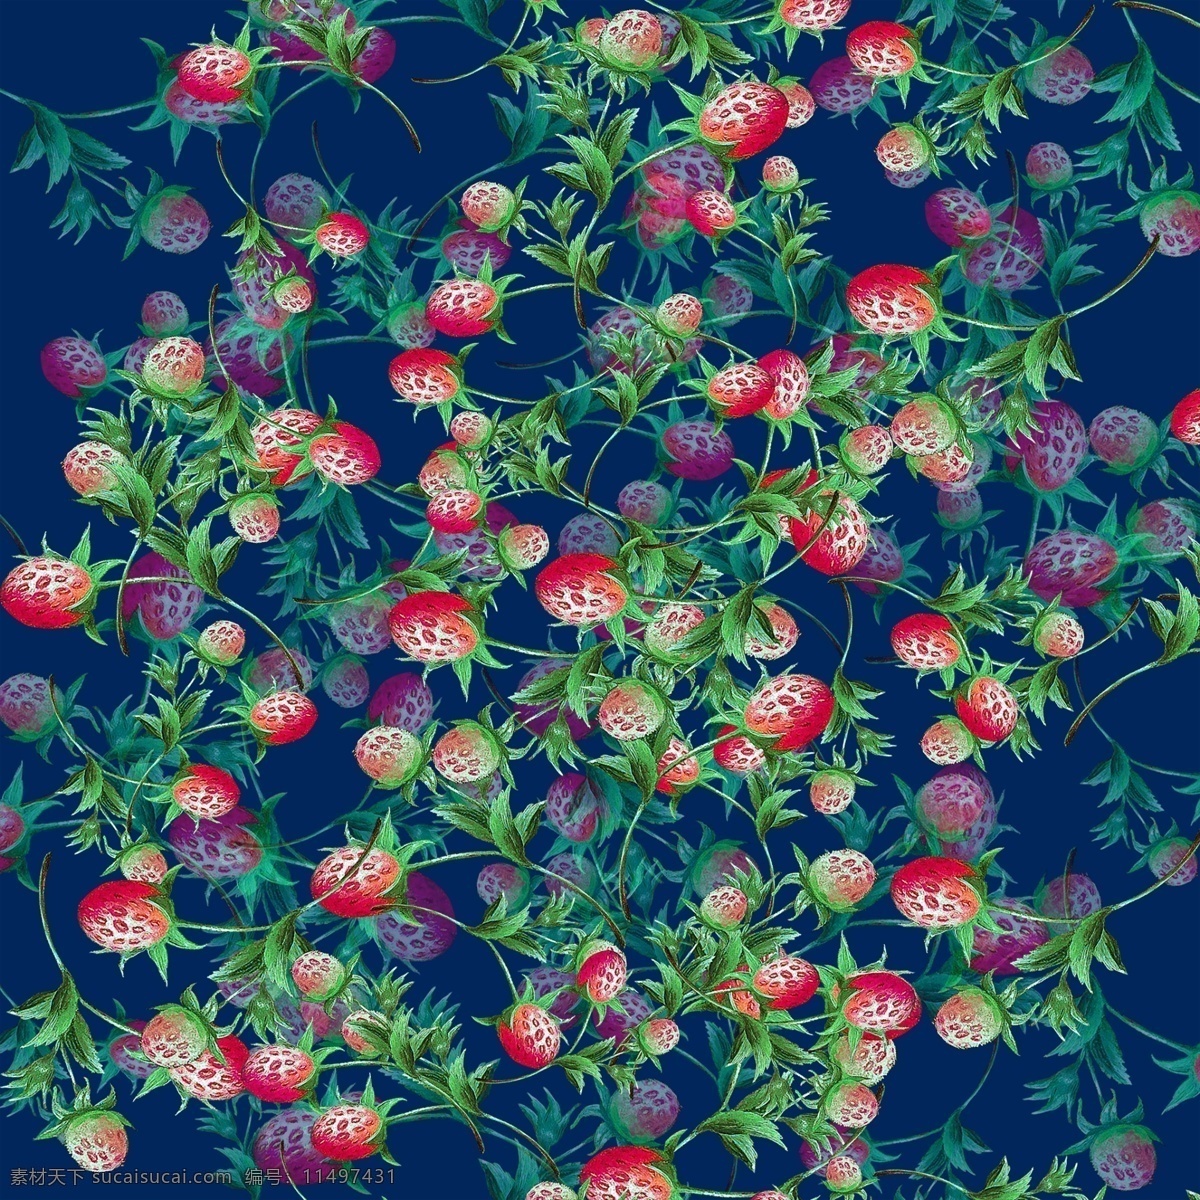 高清 油画 草莓 元素 数码 印花 面料 定位 数码印花 面料定位 纺织品印花